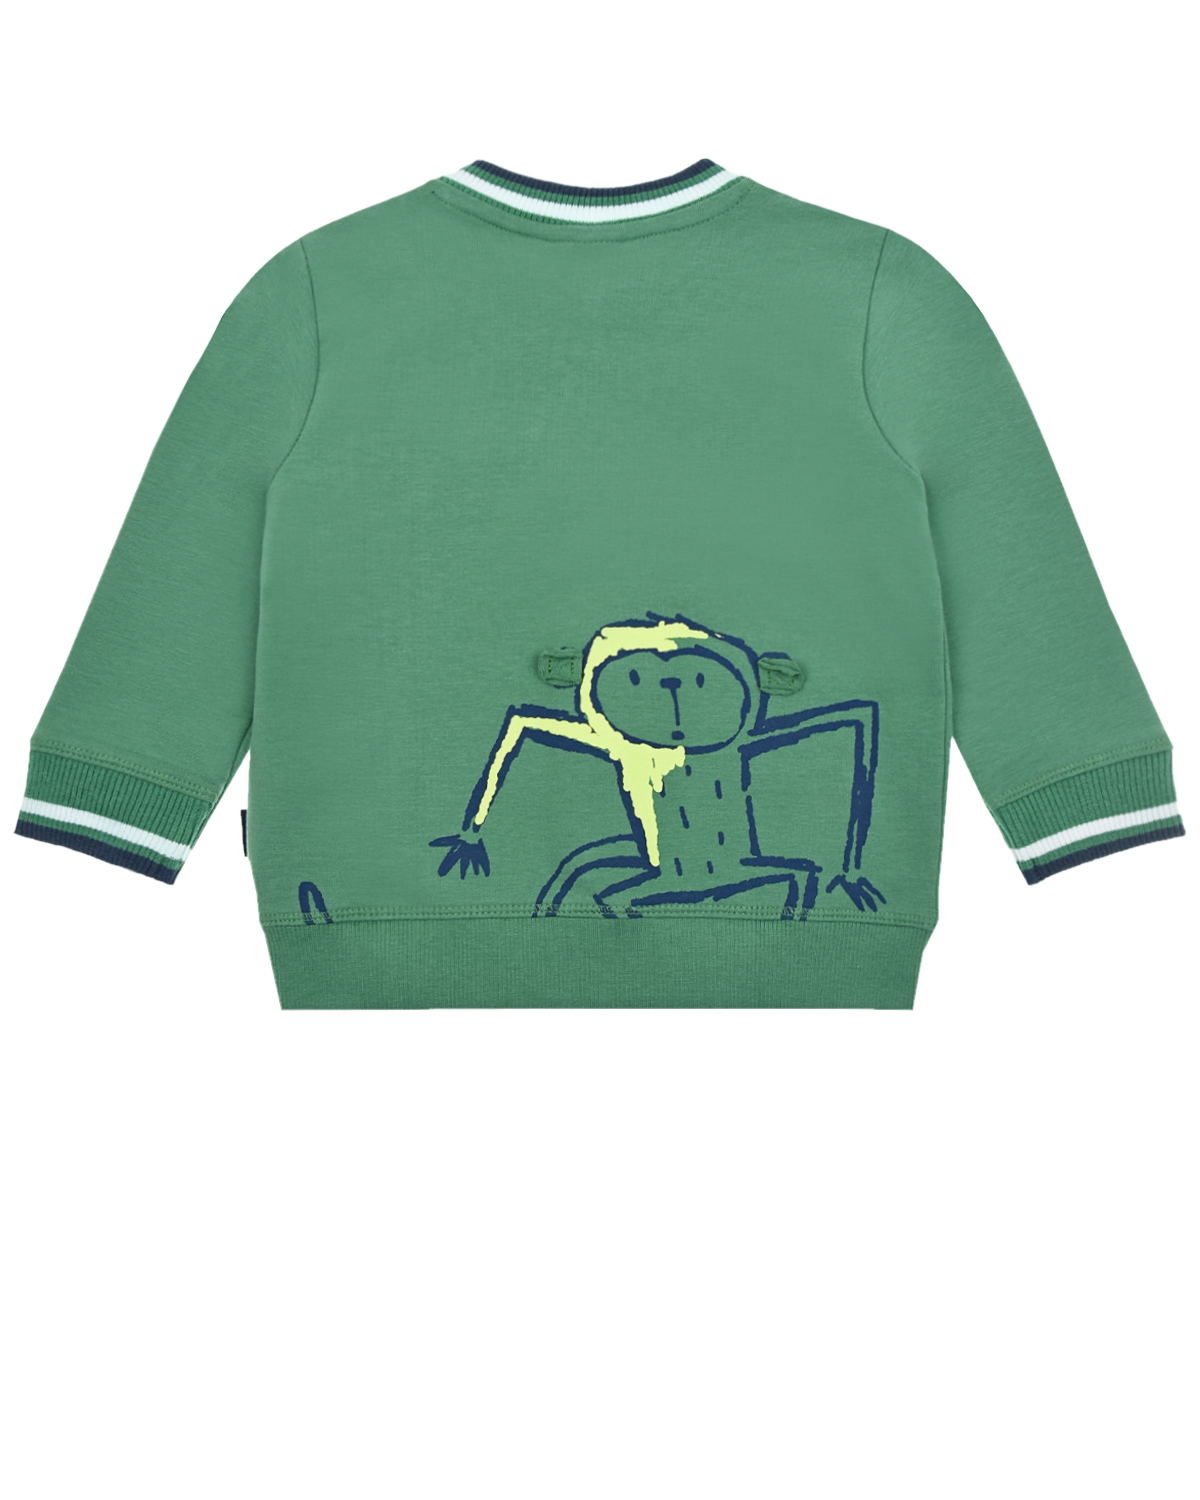 Зеленая спортивная куртка с принтом "обезьяна" Sanetta Kidswear детская, размер 62, цвет зеленый - фото 2